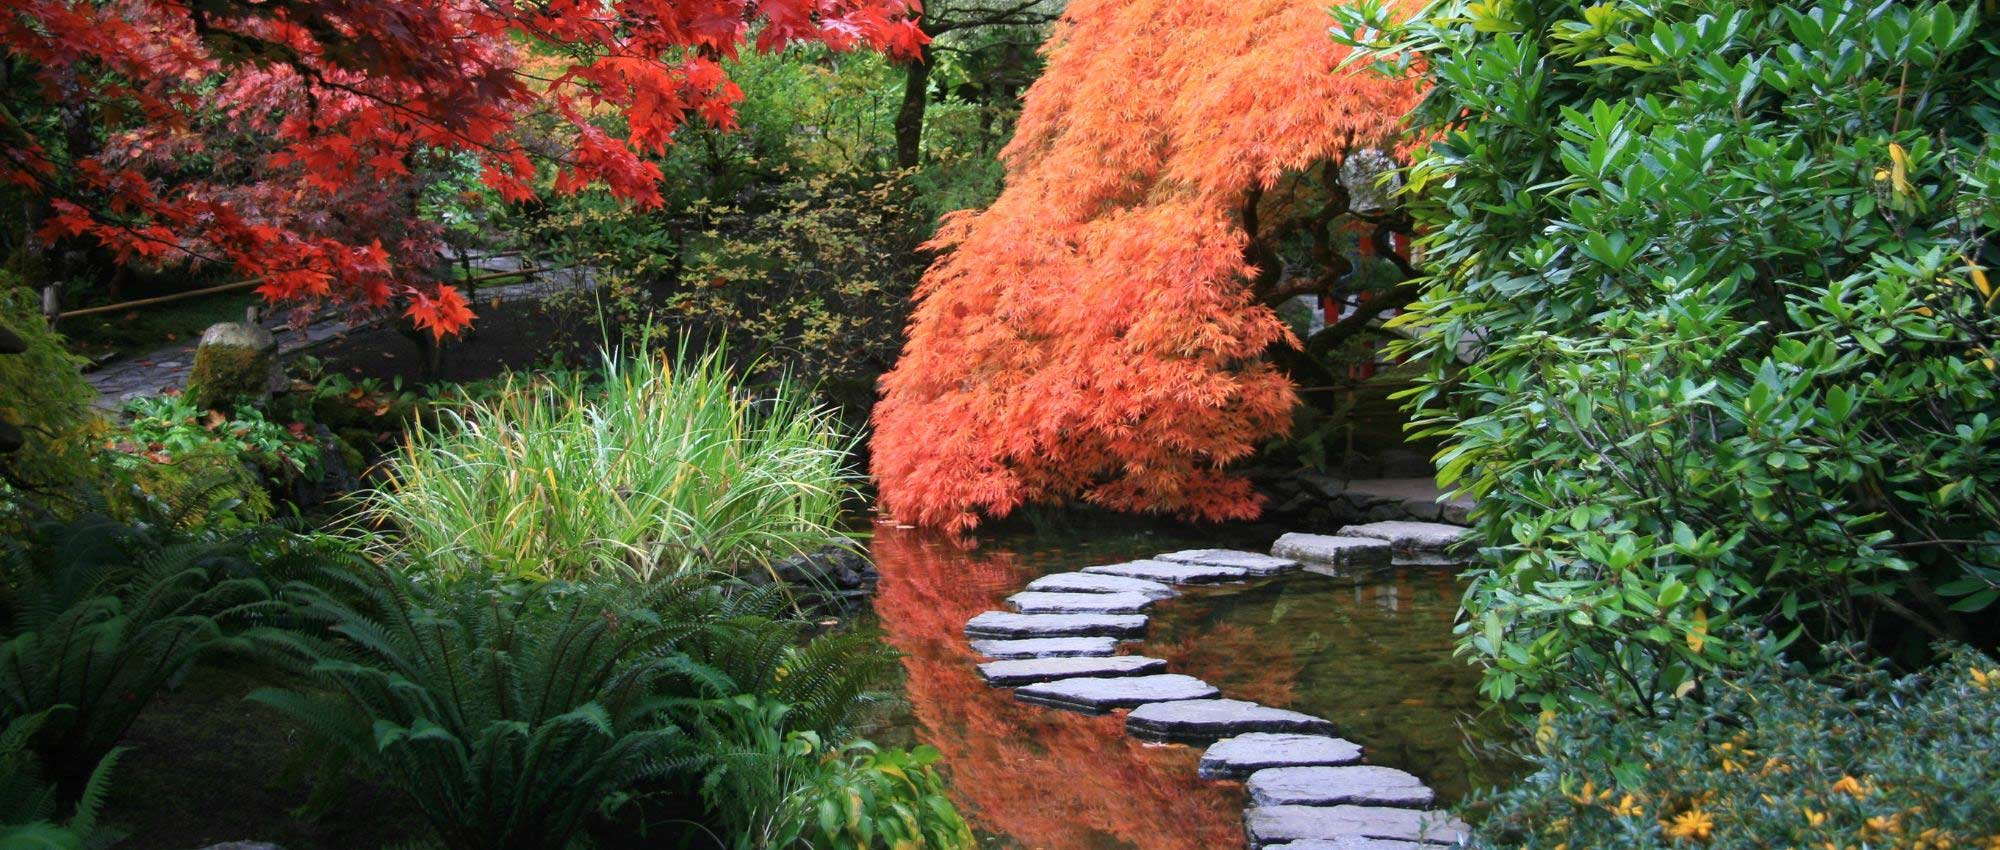 10 Plantes Vivaces Pour Jardin Japonais dedans Plantes Pour Jardin Japonais